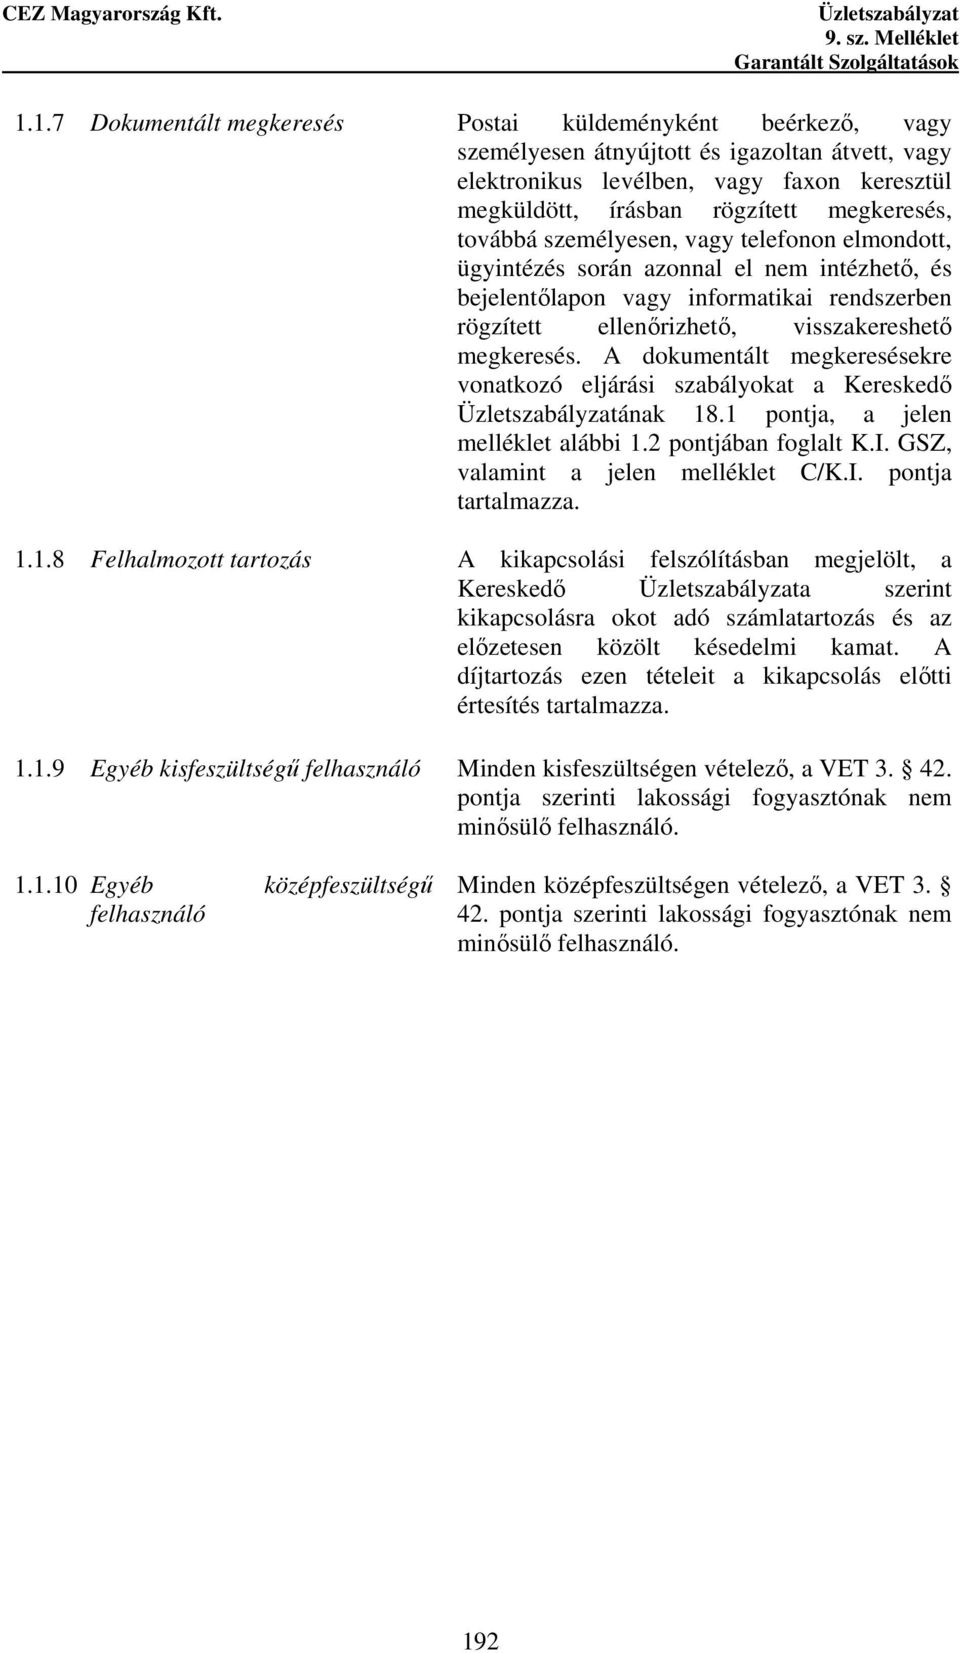 A dokumentált megkeresésekre vonatkozó eljárási szabályokat a Kereskedı ának 18.1 pontja, a jelen melléklet alábbi 1.2 pontjában foglalt K.I. GSZ, valamint a jelen melléklet C/K.I. pontja tartalmazza.